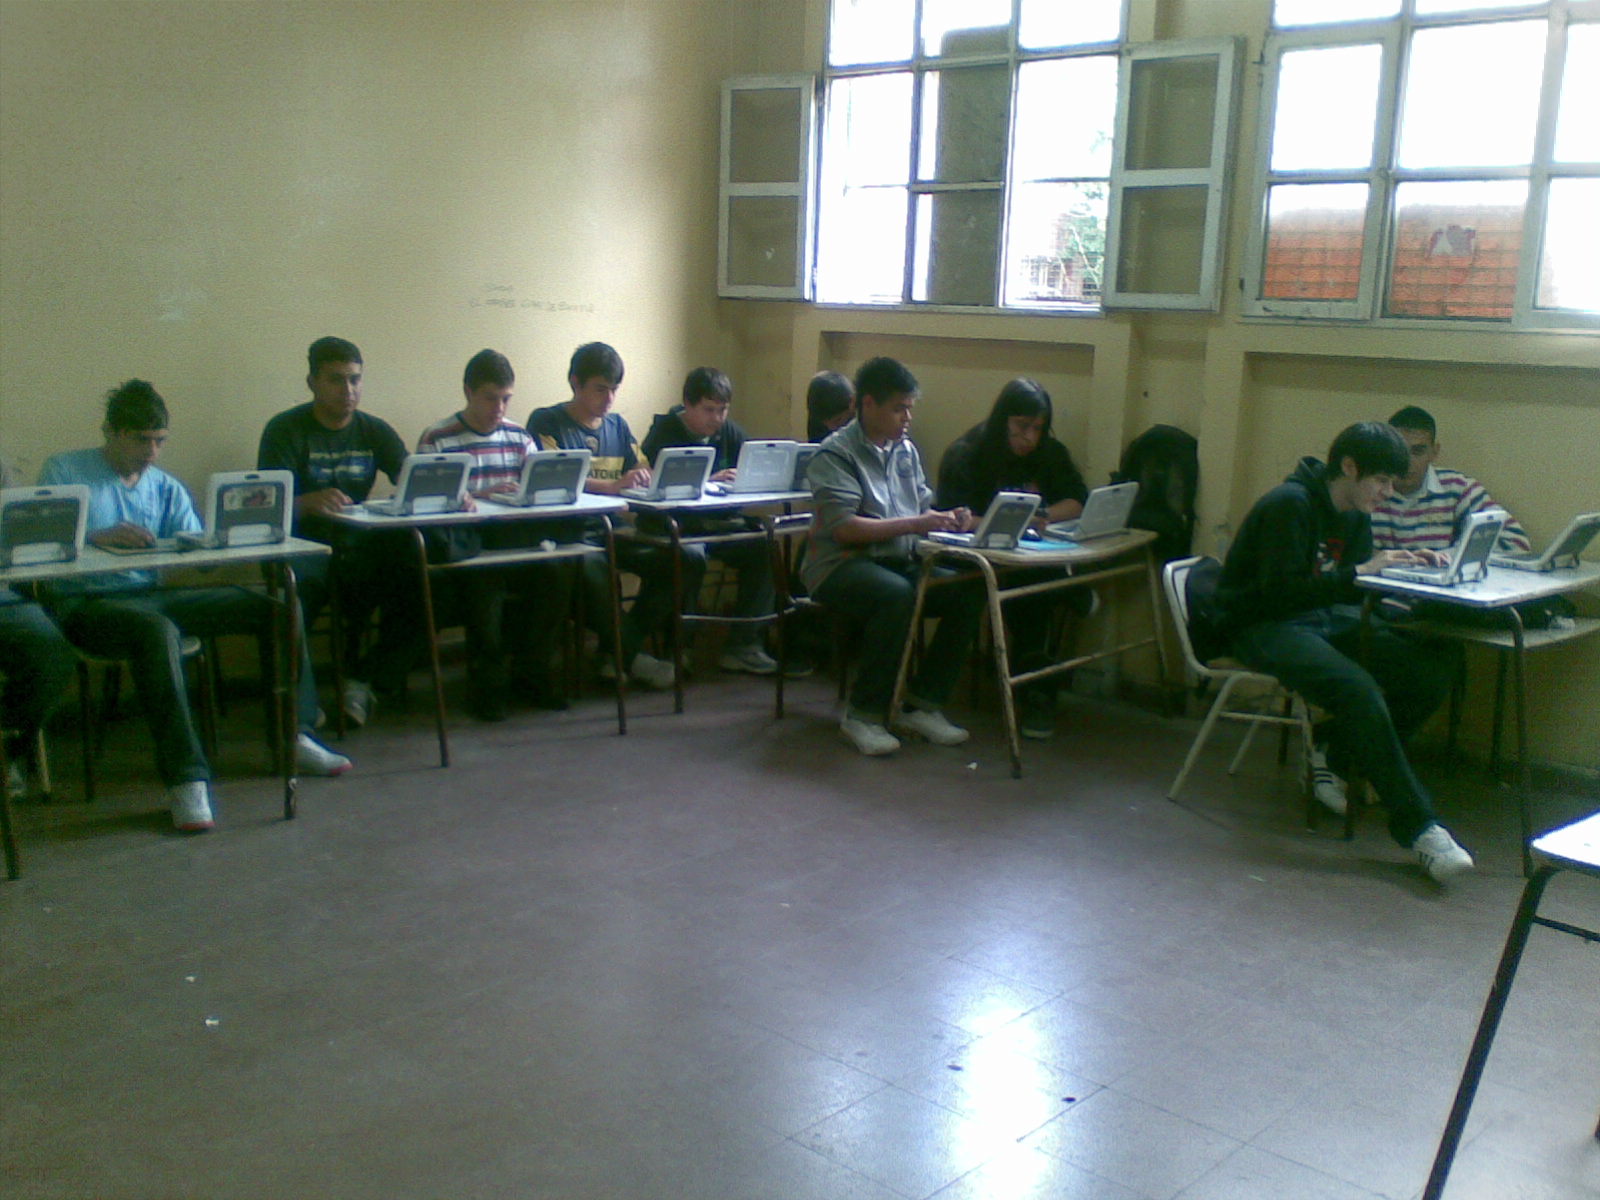 Alumnos de una escuela tecnica trabajando con computadoras. Se observa una disposición tradicional del espacio aulico.